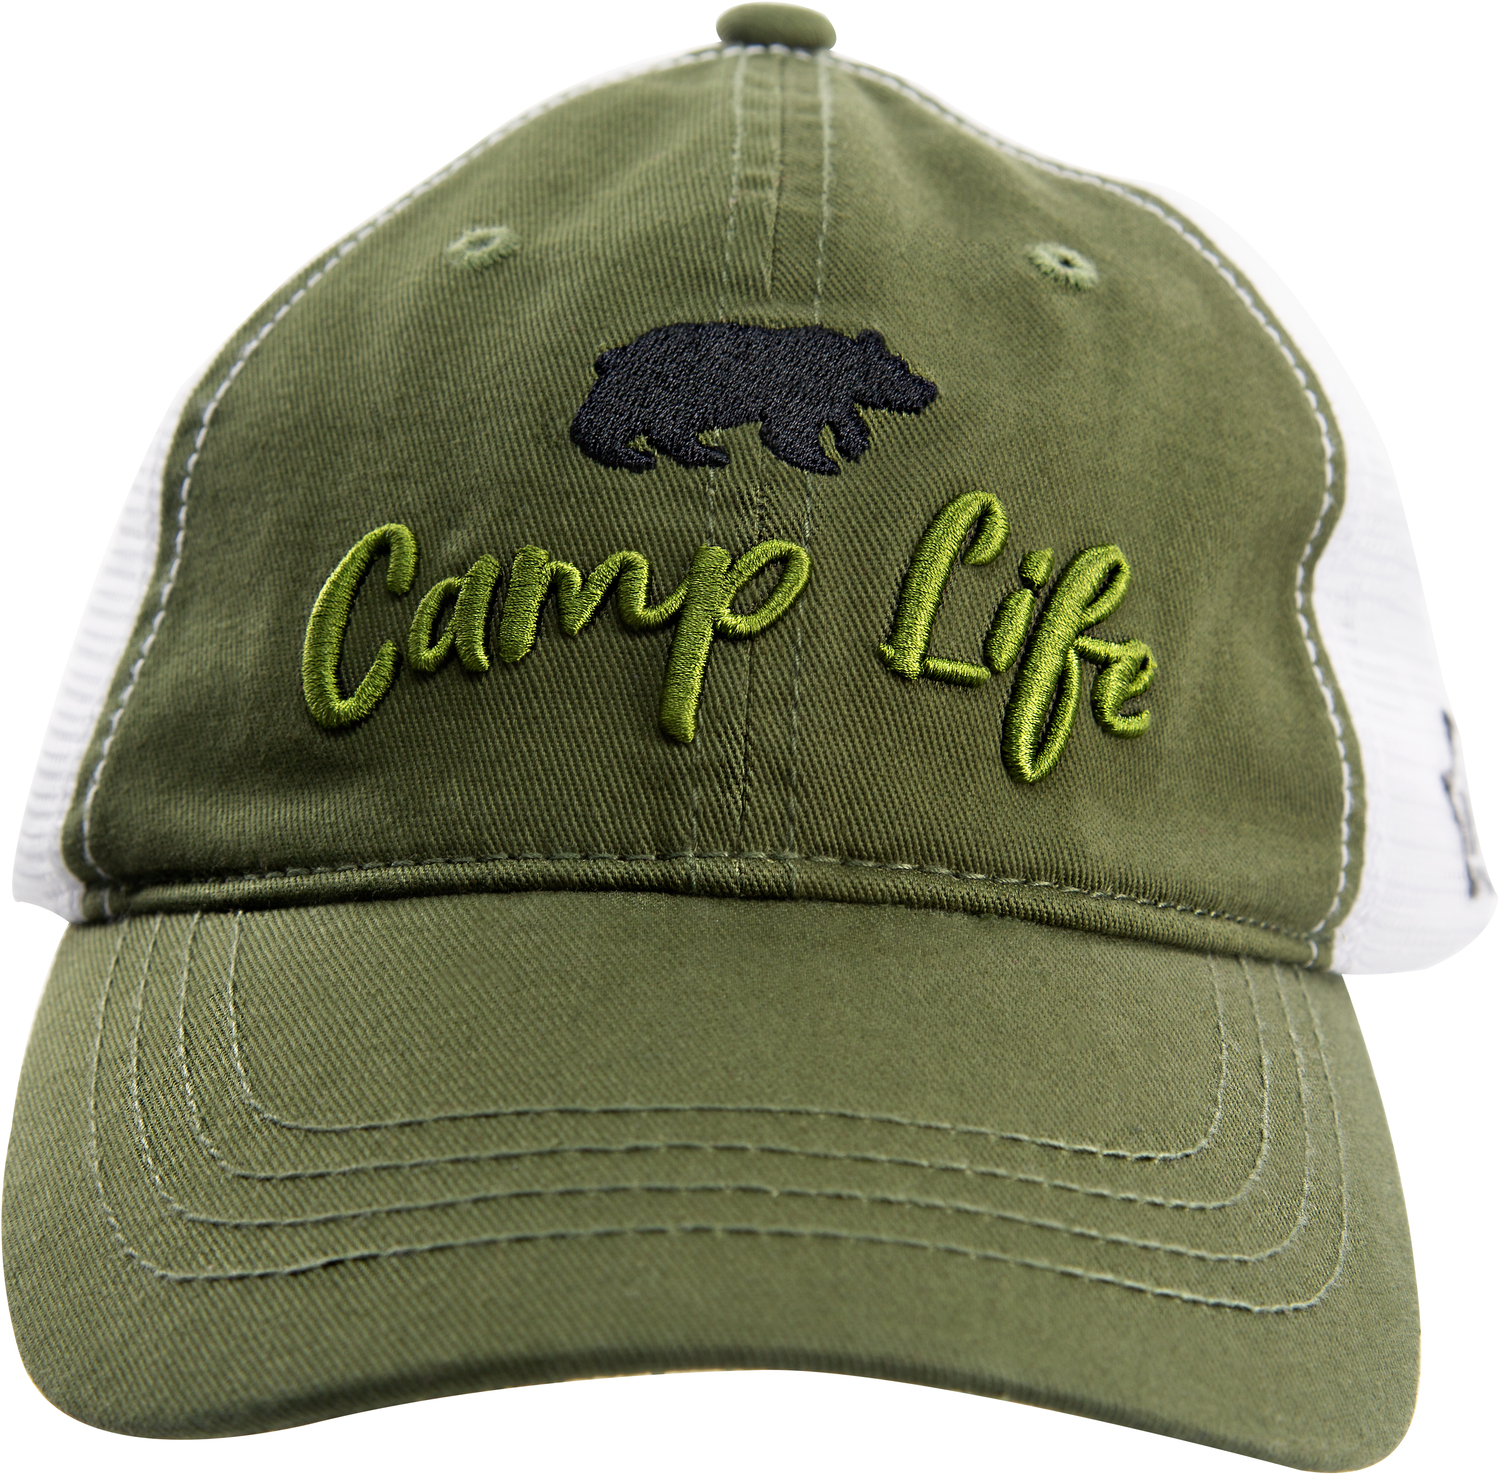 Camp, Olive Green Adjustable Mesh Hat - We People - Pavilion